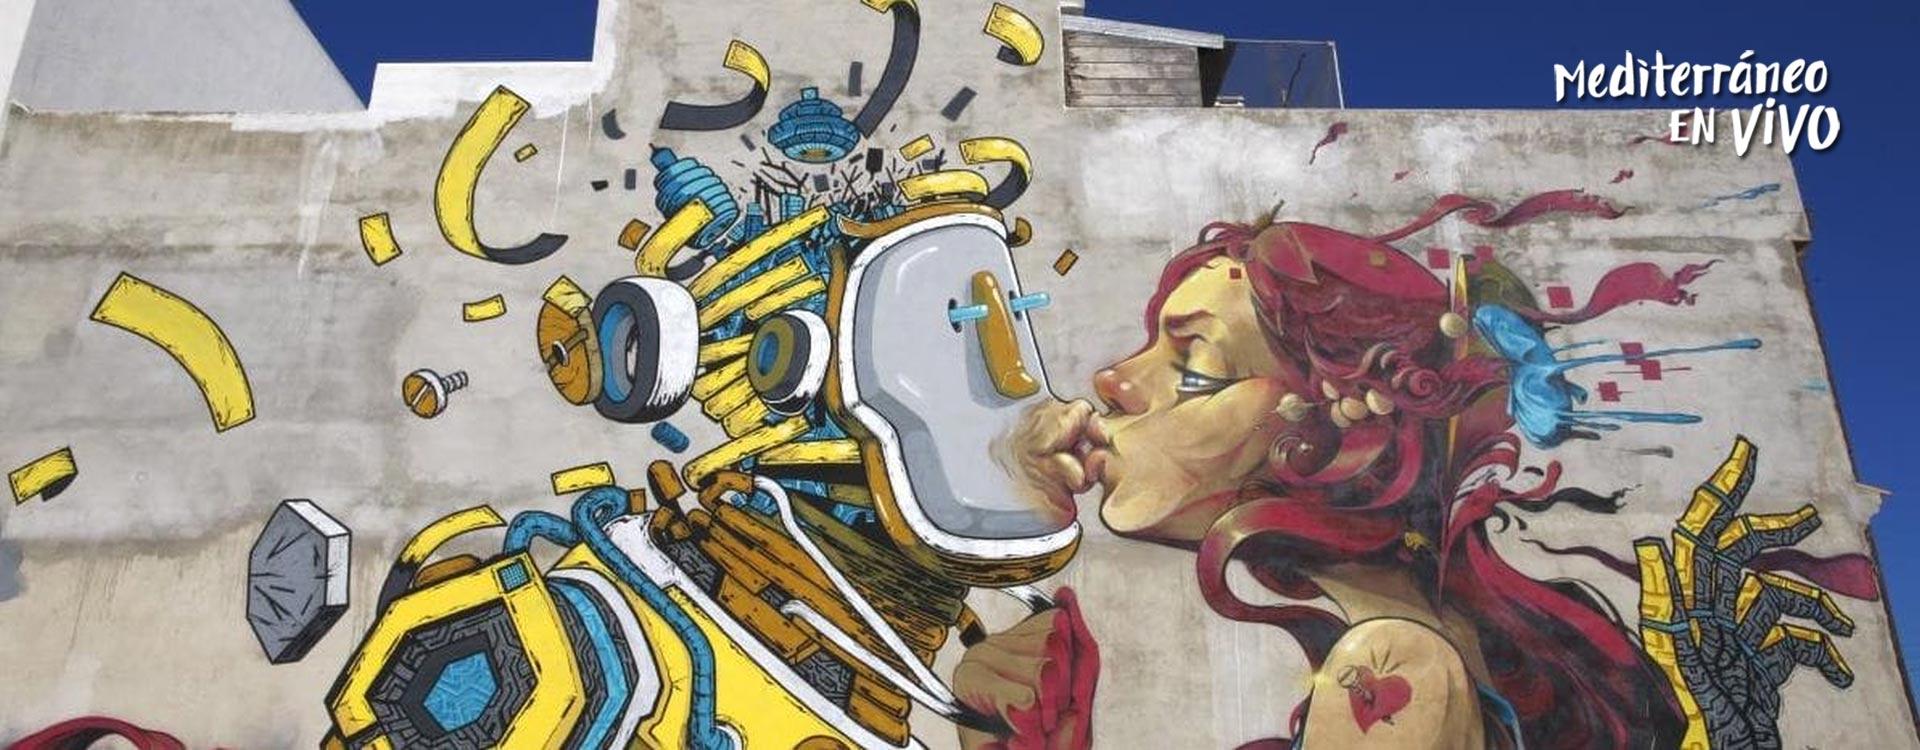 Citric, un exemple un street art o art de carrer a Torreblanca	